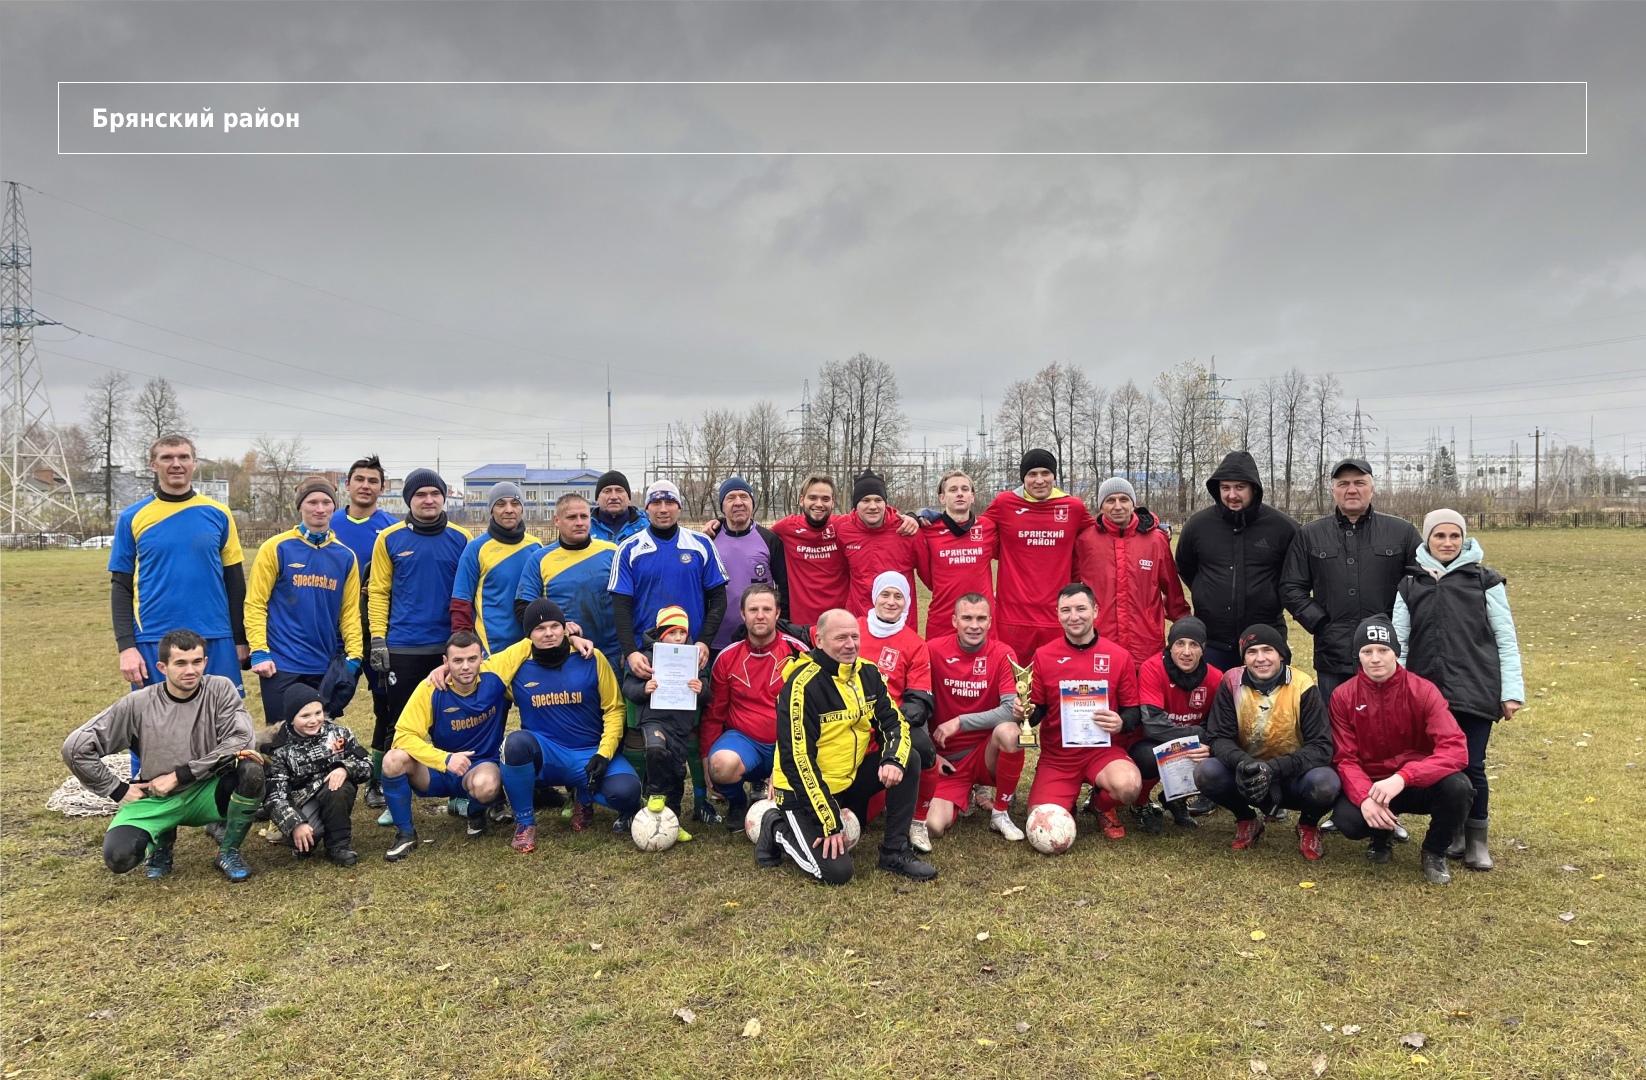 Состоялся суперкубок Брянского района по футболу